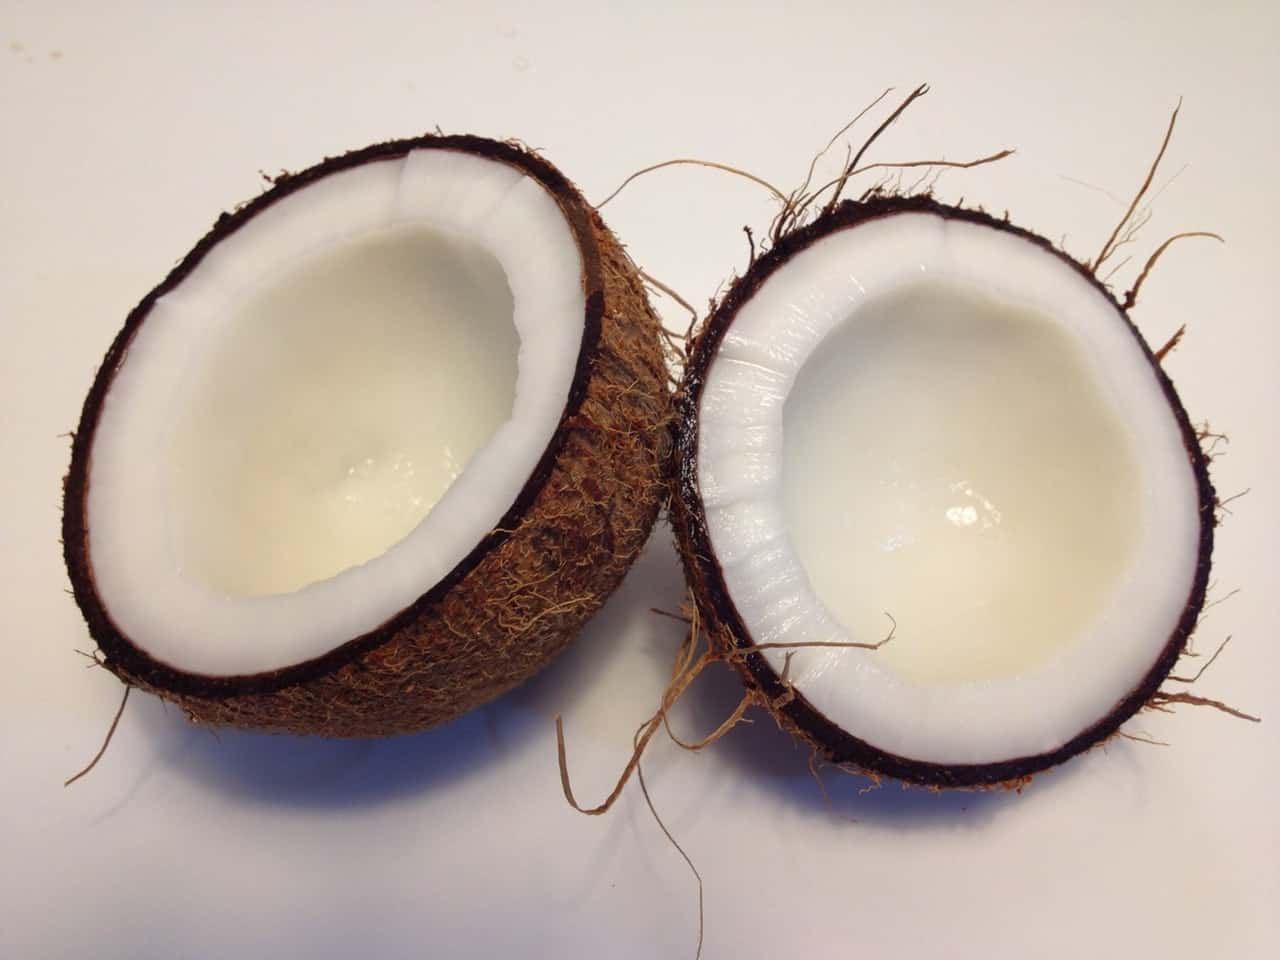 Coconut split in half